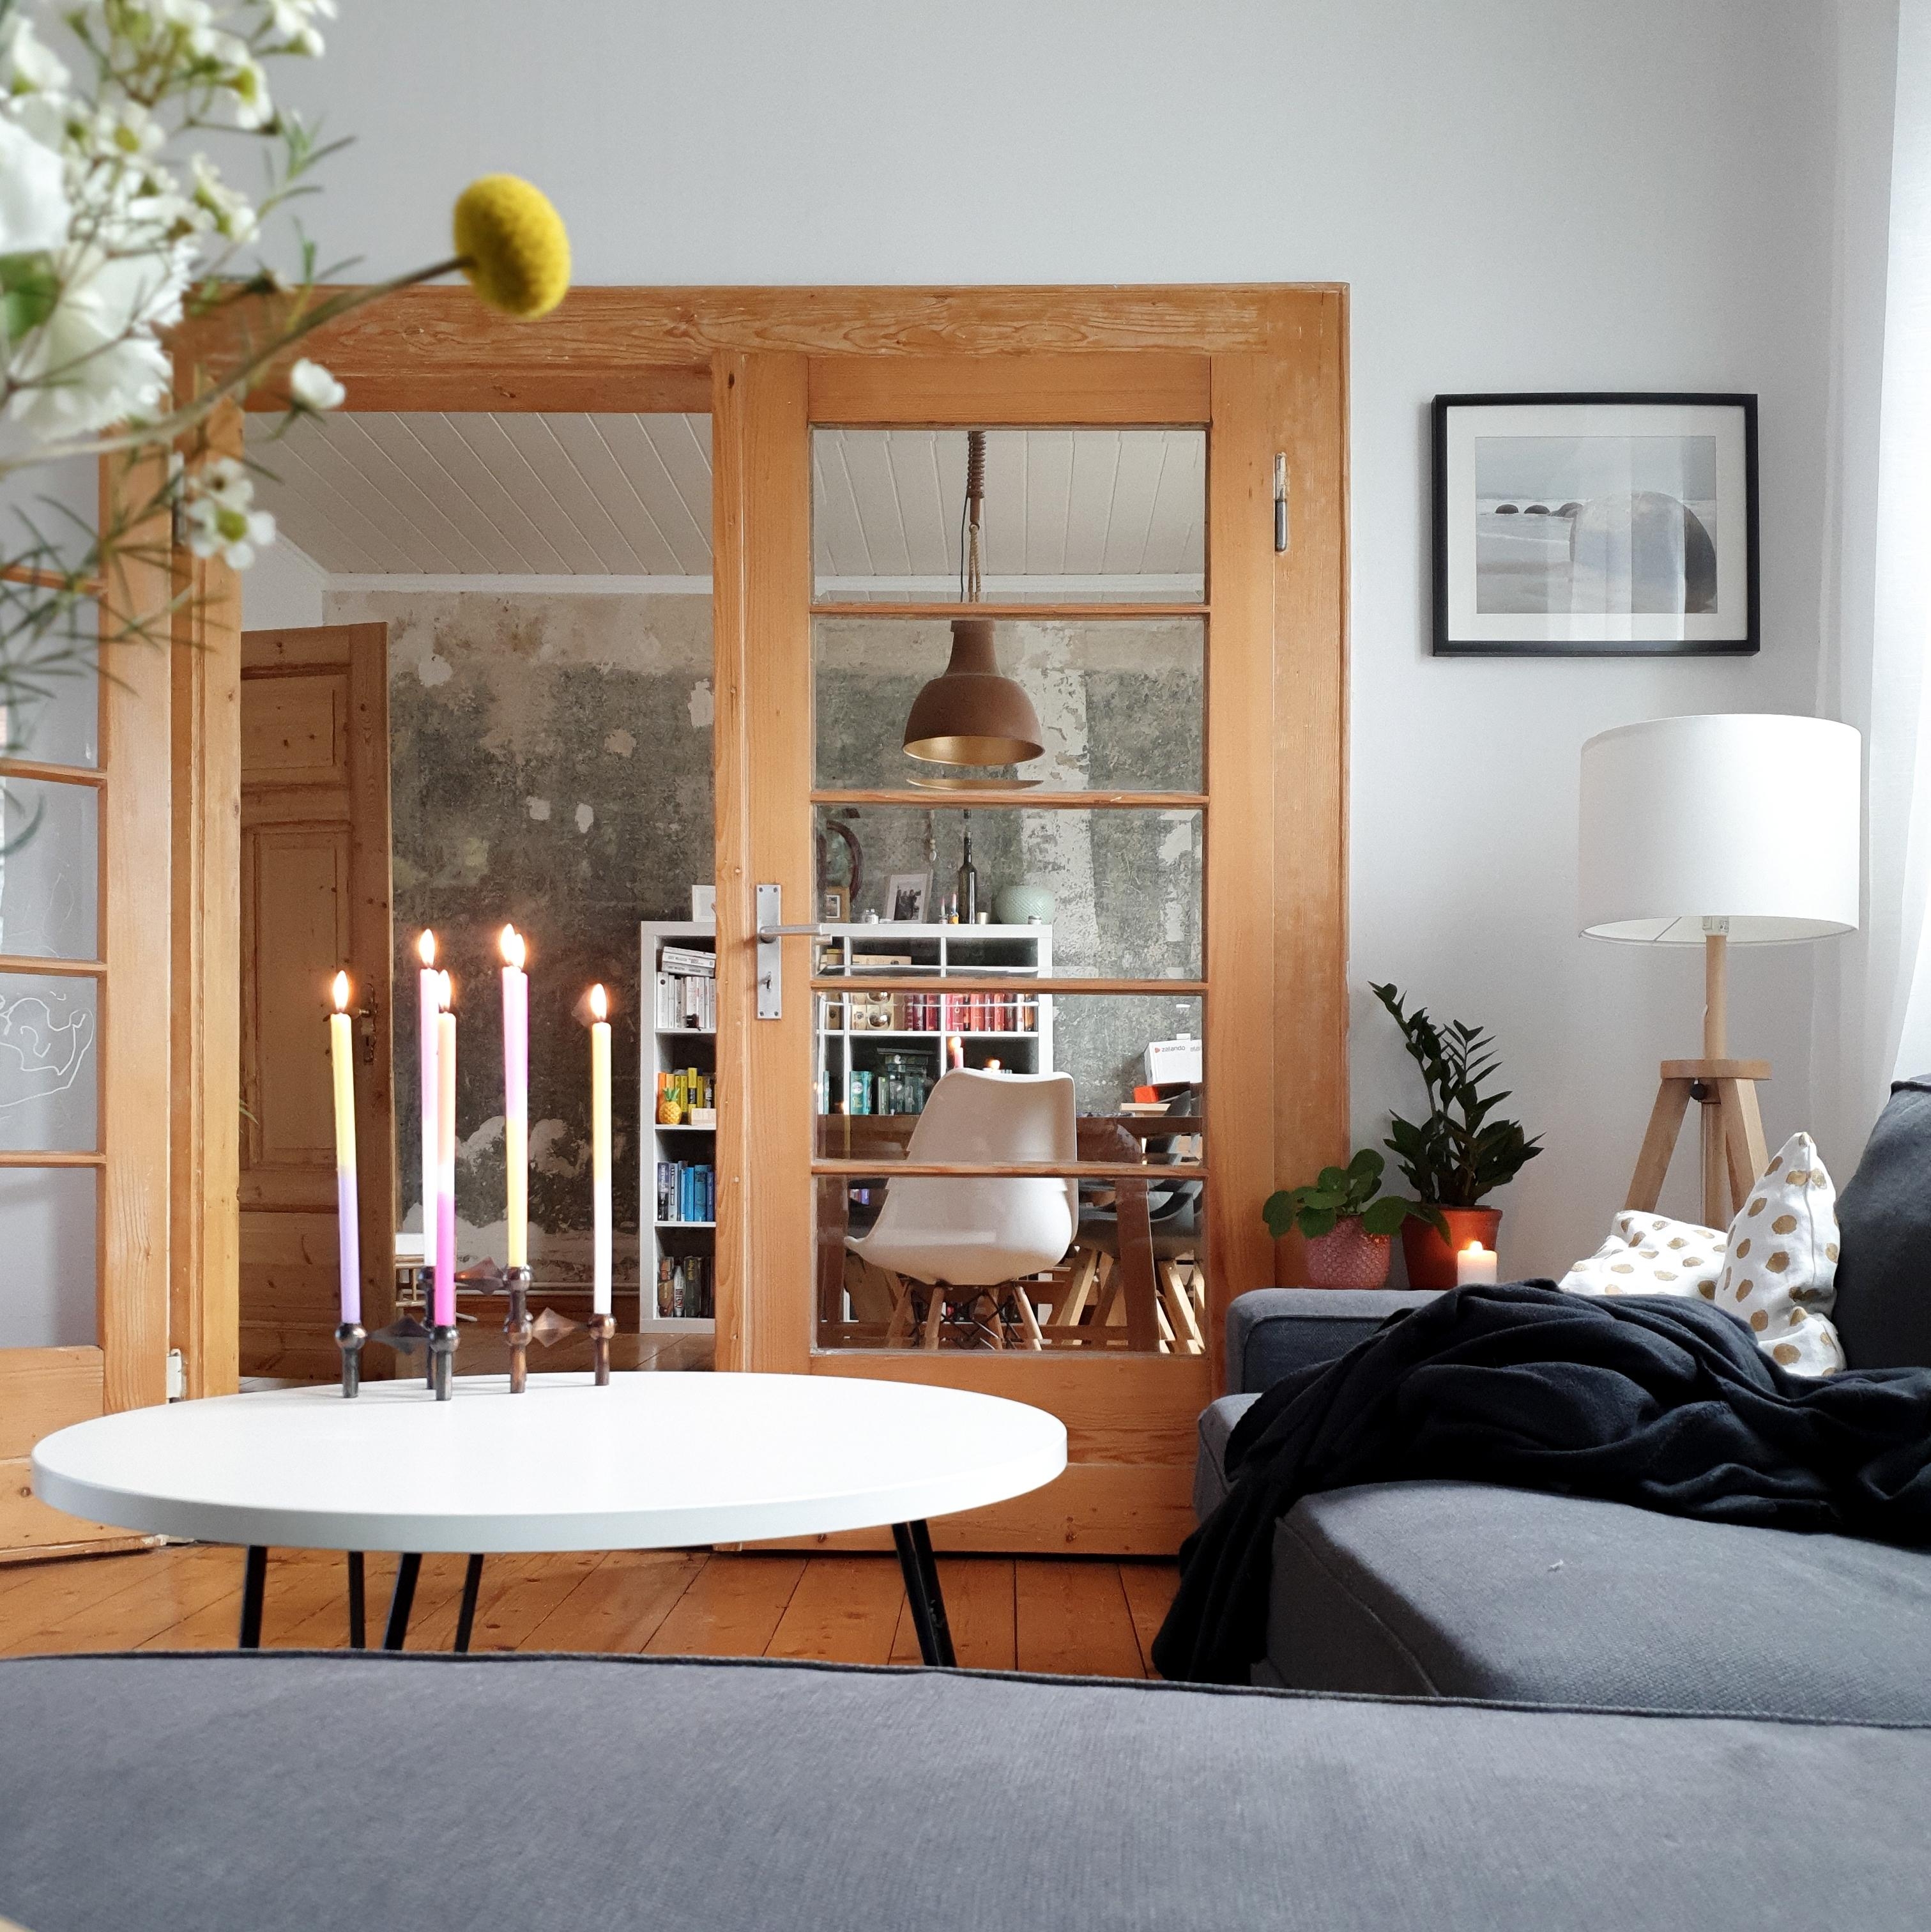 Happy Monday 🌸
#couchstyle #couchmagazin #interior #livingroom #livingroominspo #wohnzimmer #holz #flügeltür #details 